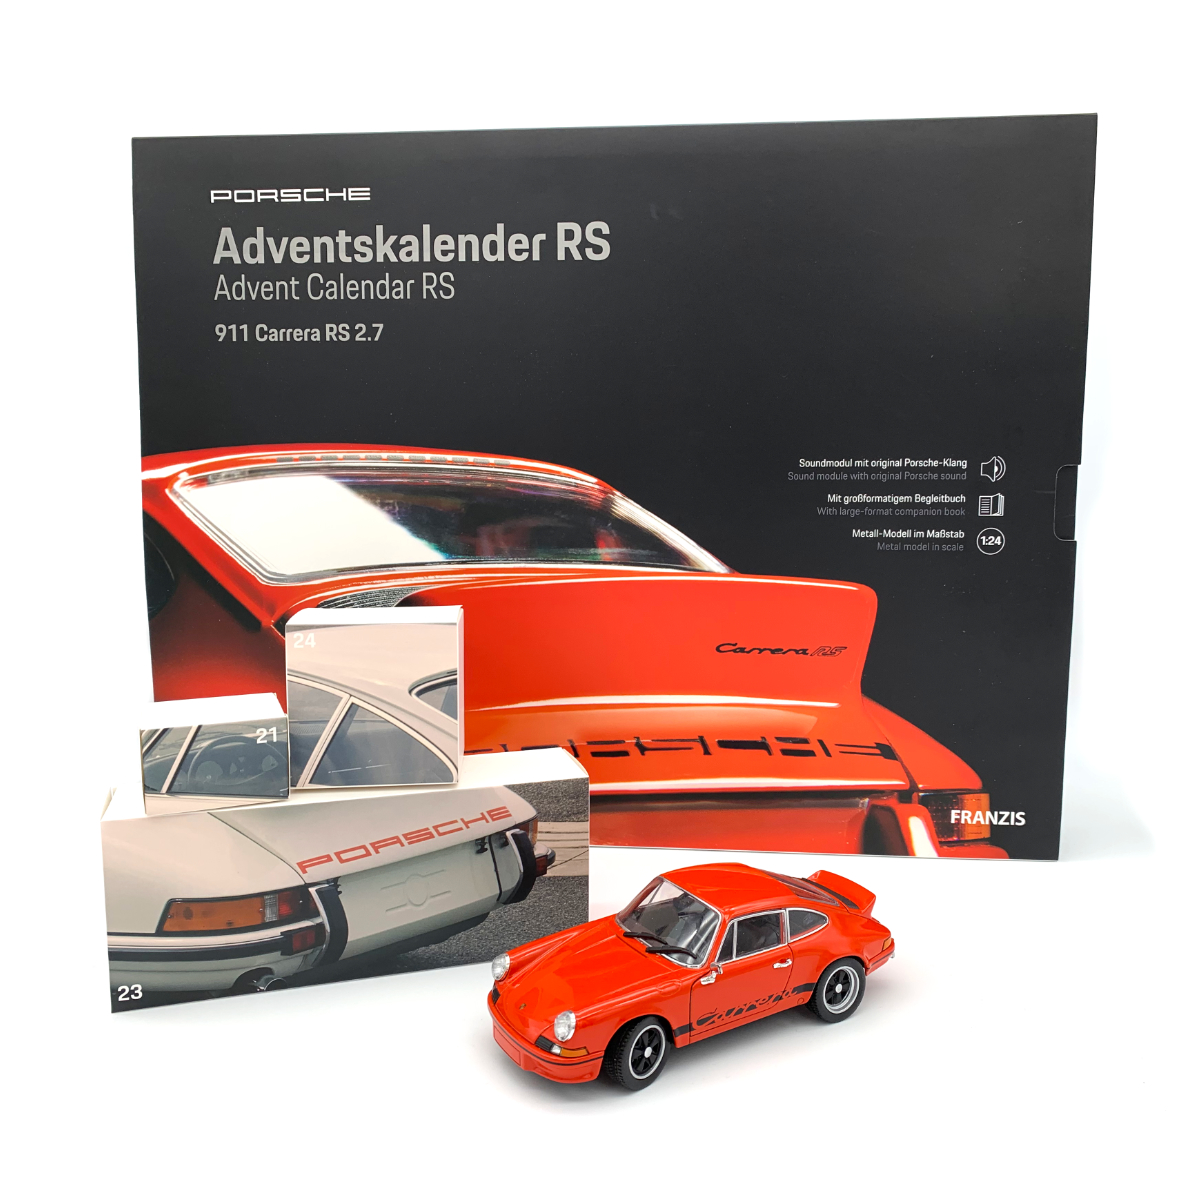 Advent Calendar Porsche 911 2020 From 14 Years Franzis Verlag New 